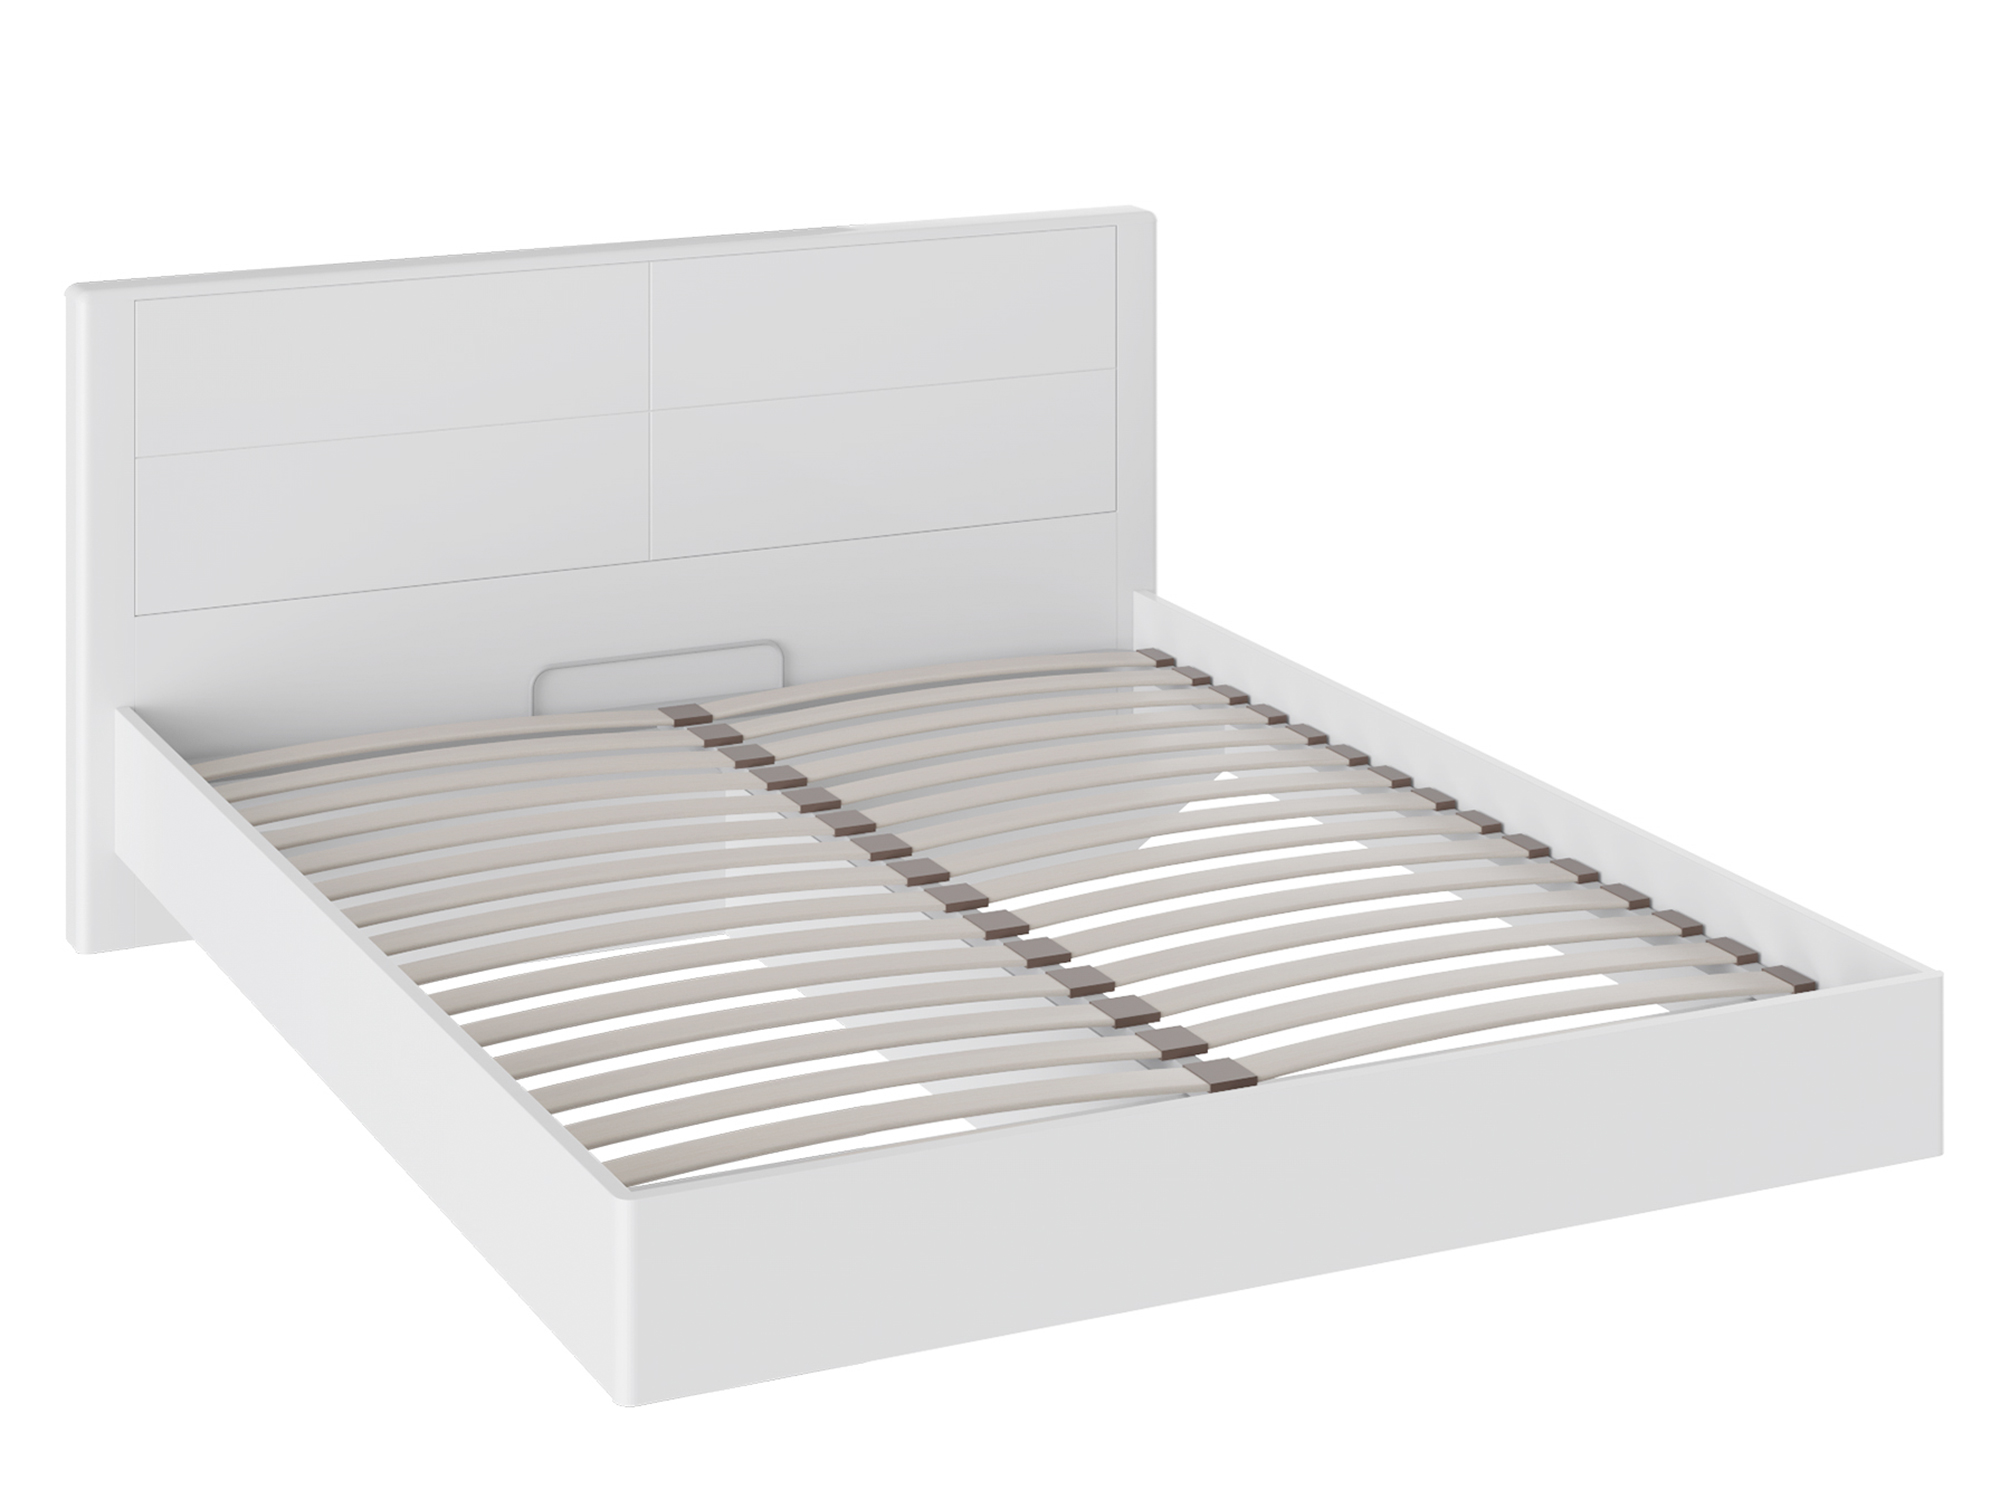 Кровать Наоми (160х200) Белый глянец, Белый, МДФ, Пленка ПВХ, ЛДСП кровать с мягкой спинкой и пм наоми 160х200 белый лдсп кромка abs